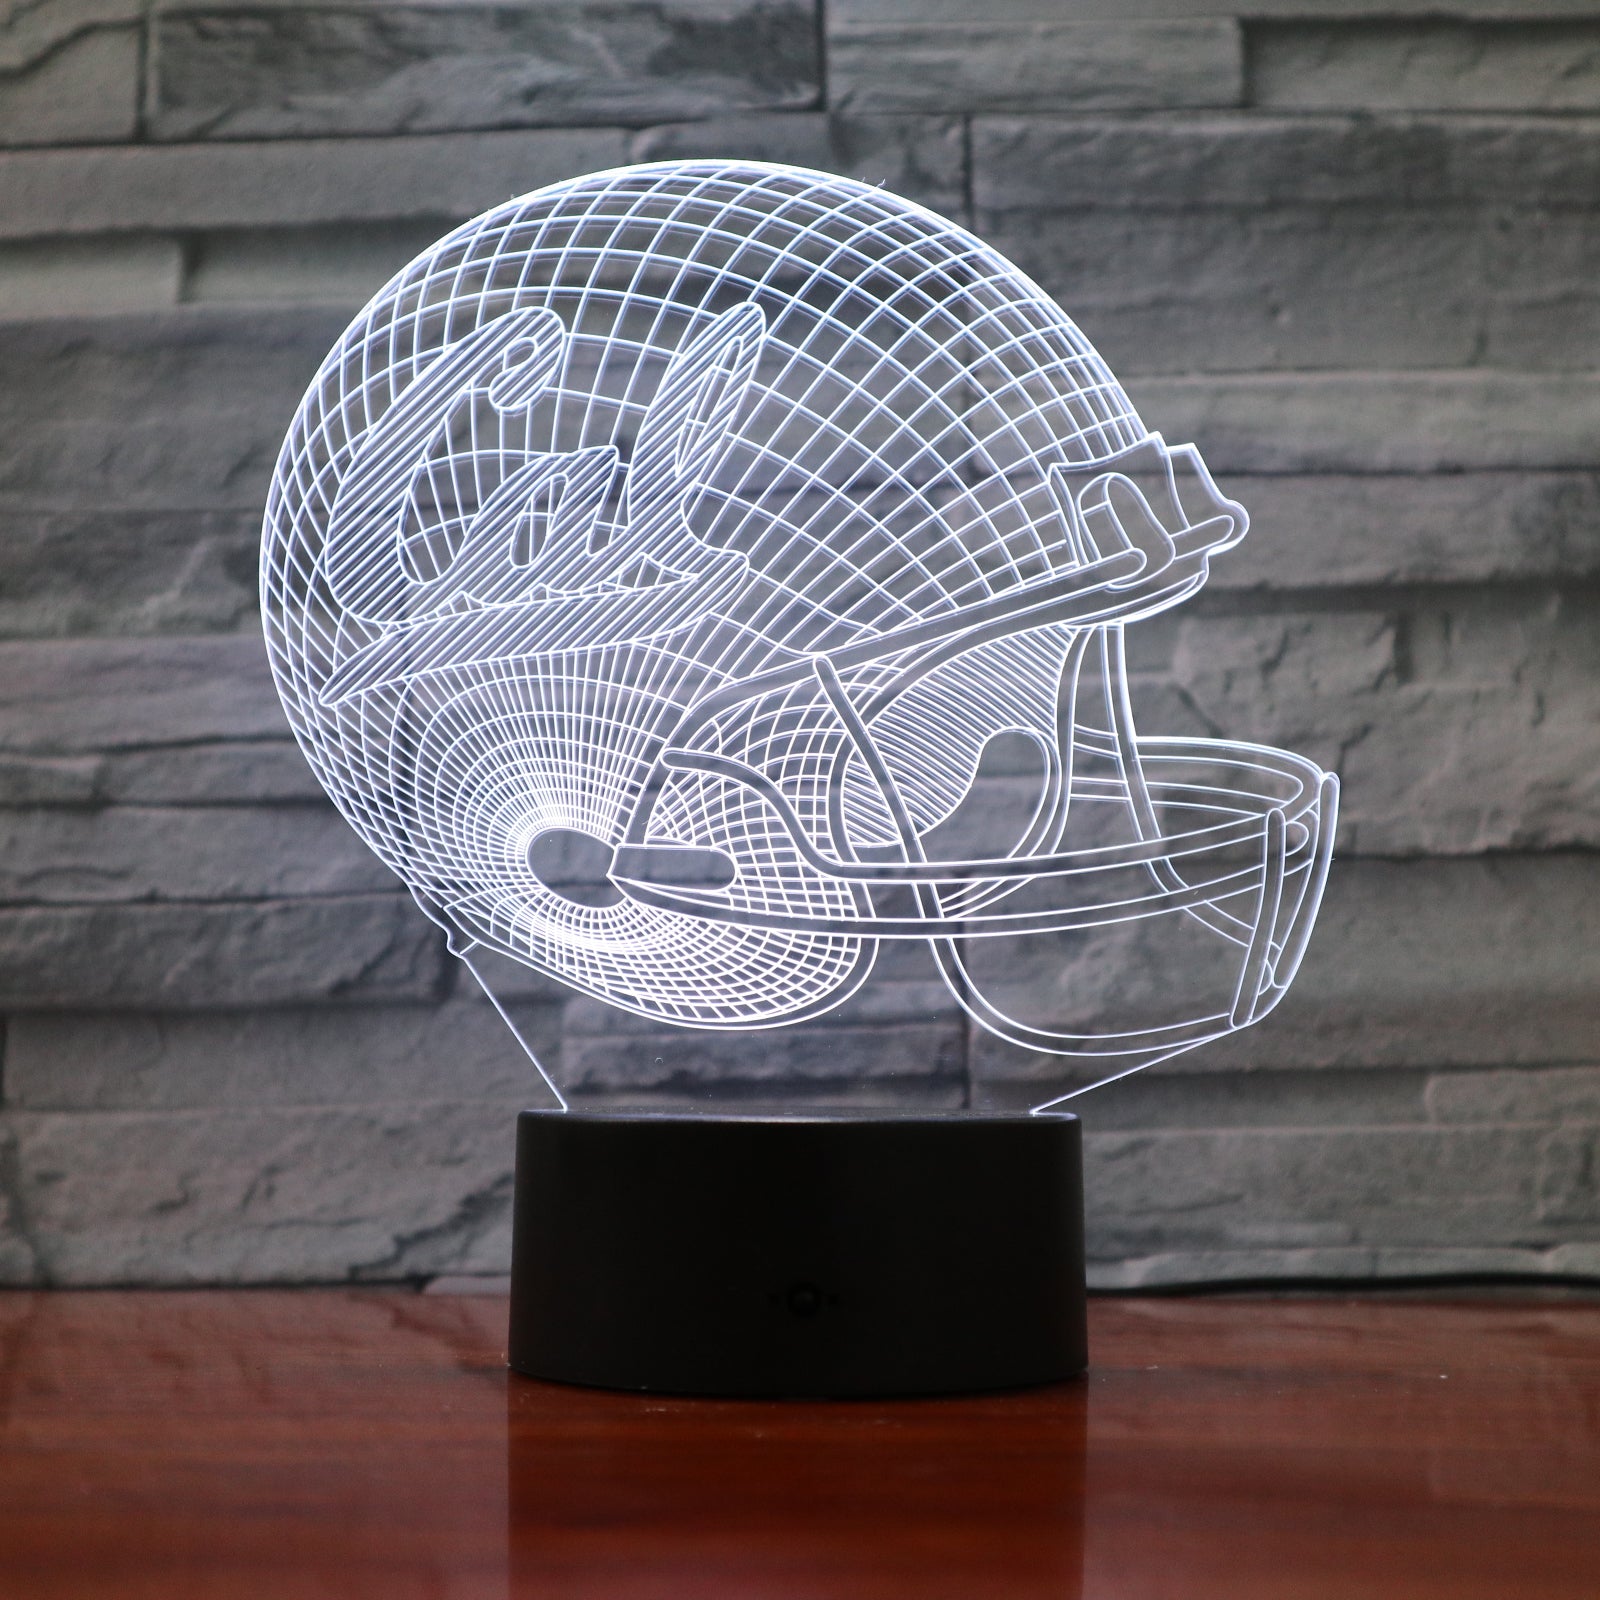 American Football Helmet 5 - 3D Optical Illusion LED Lamp Hologram